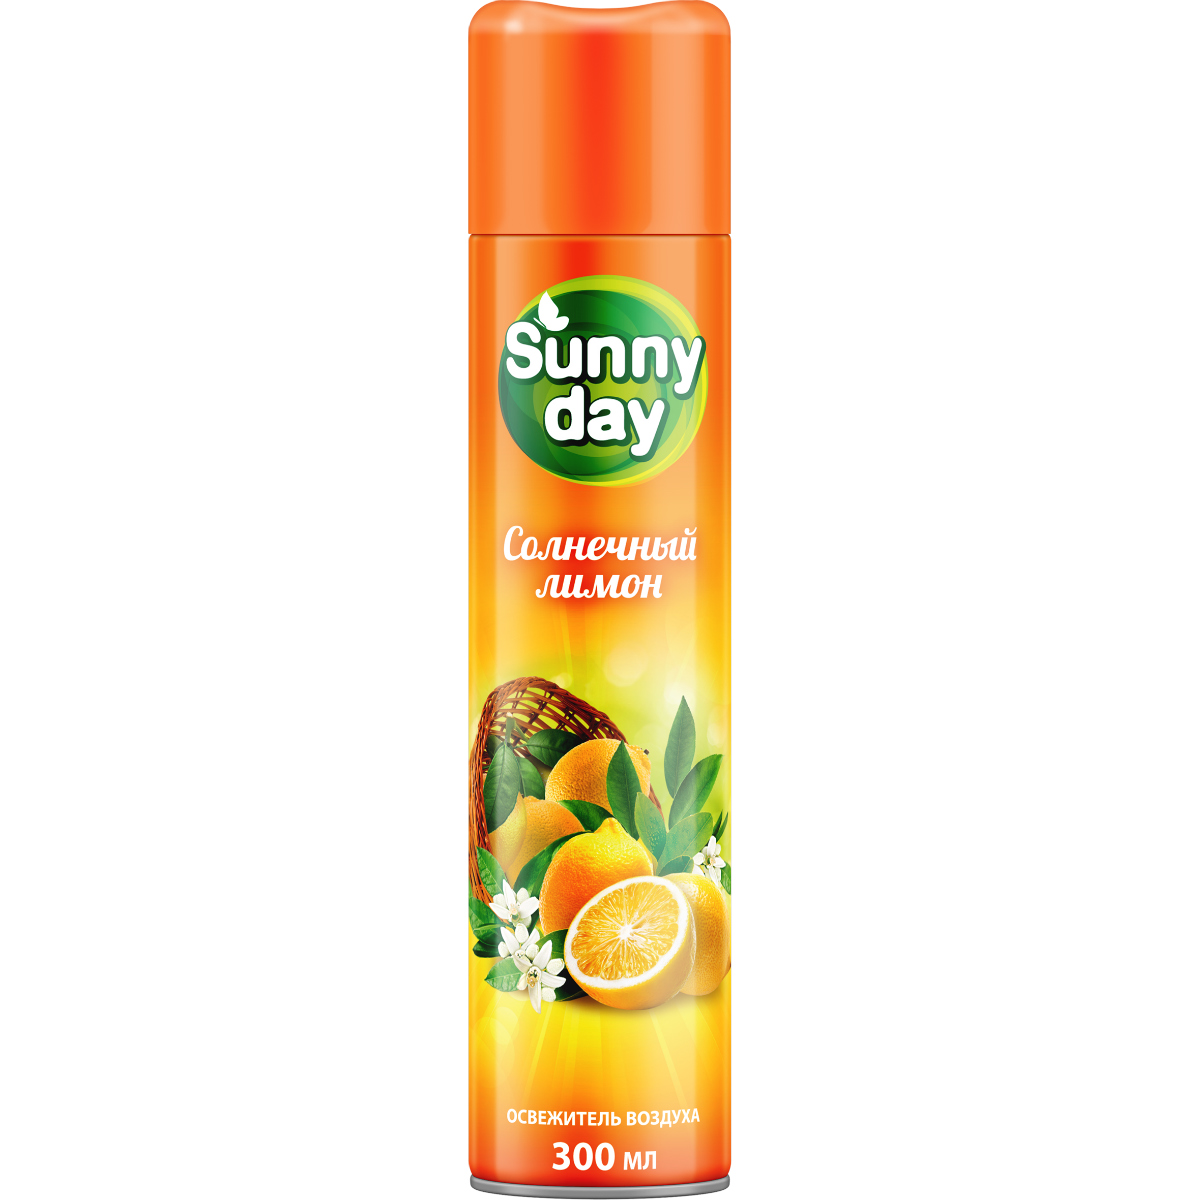 Sunny Day Освежитель воздуха Солнечный лимон 300см3